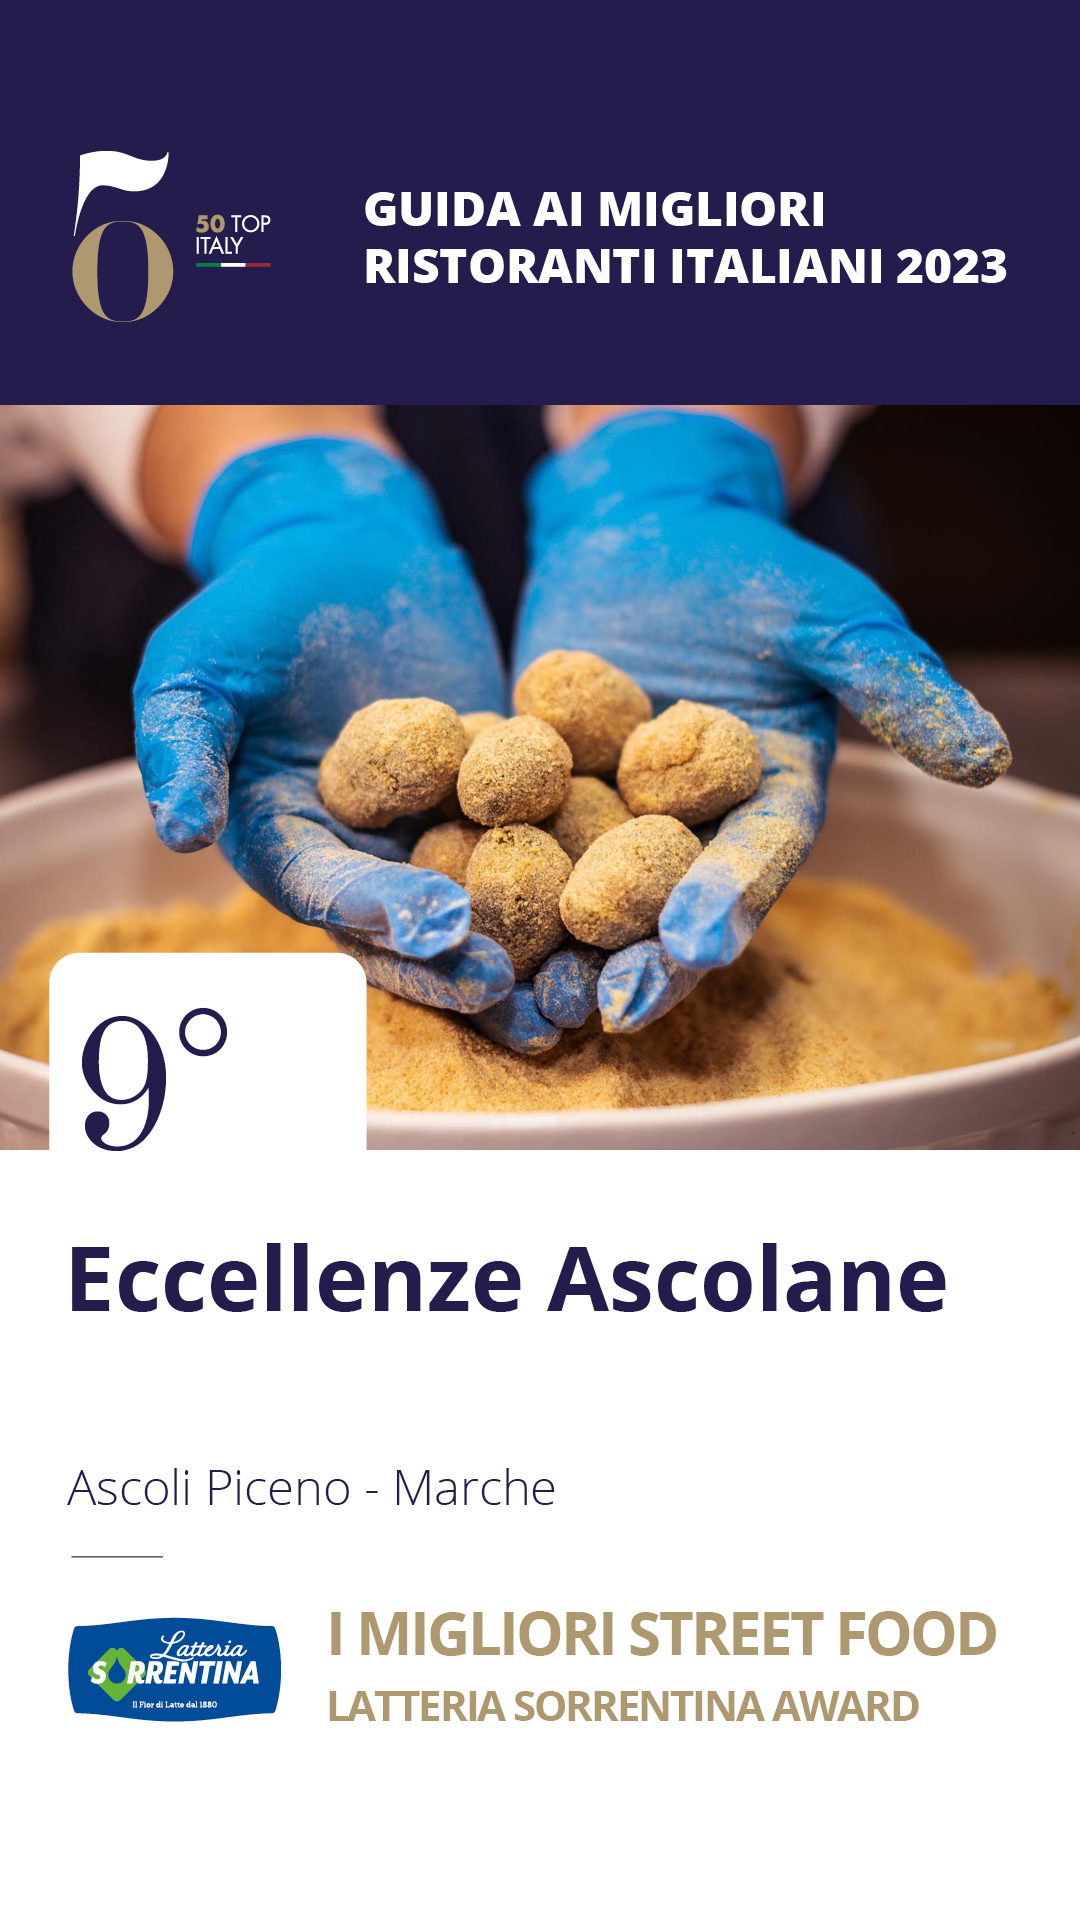 9 - Eccellenze Ascolane - Ascoli Piceno, Marche